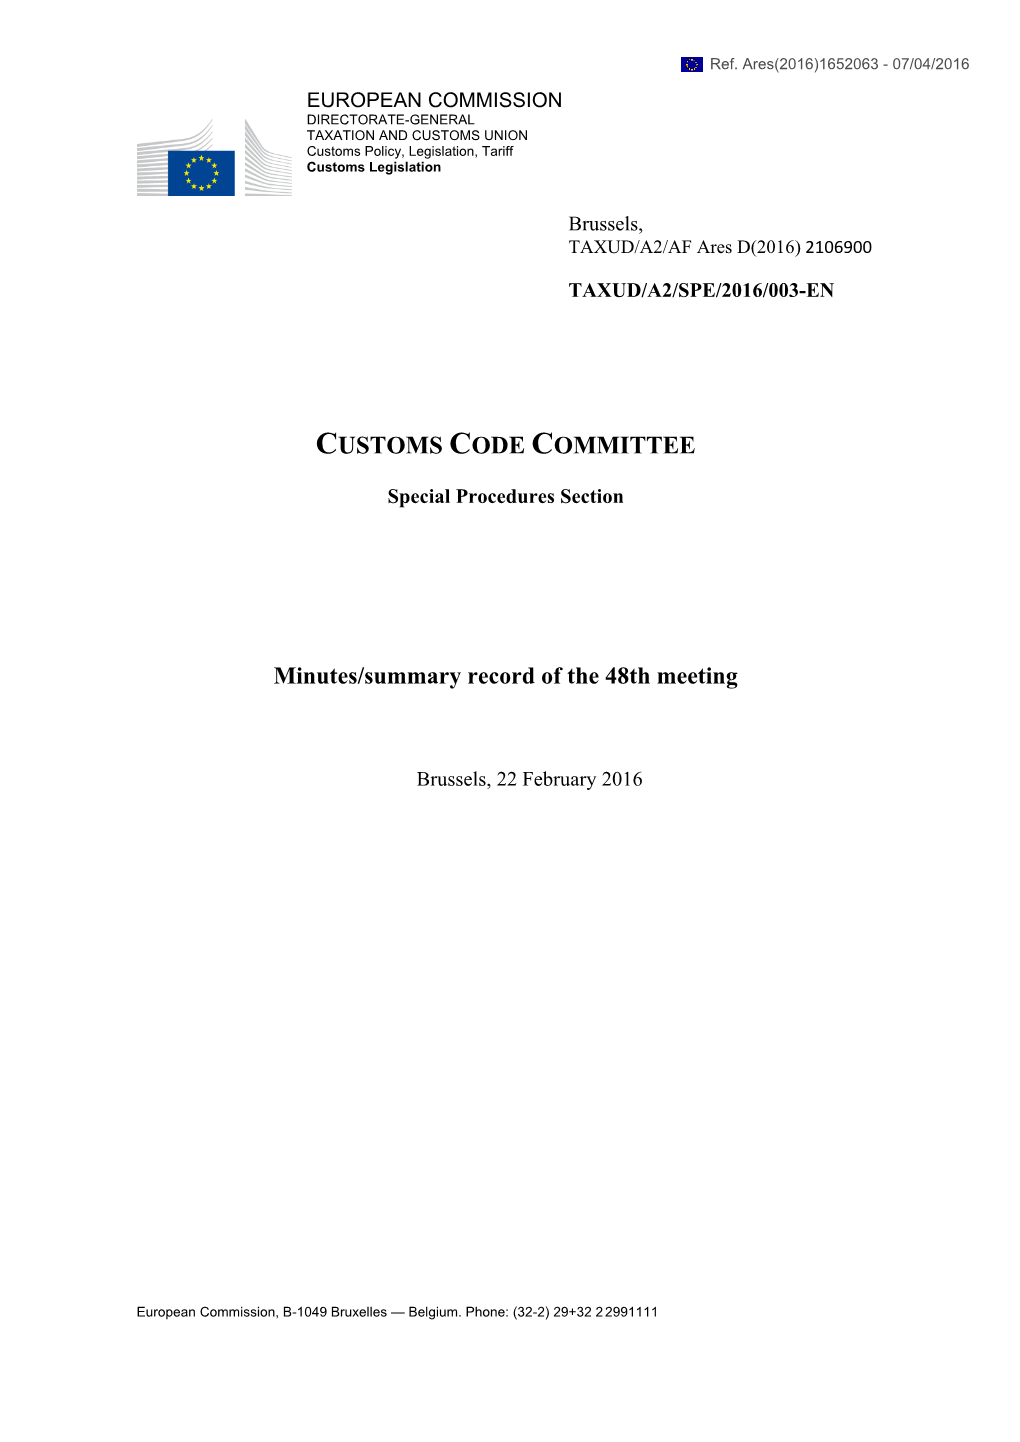 Customs Code Committee